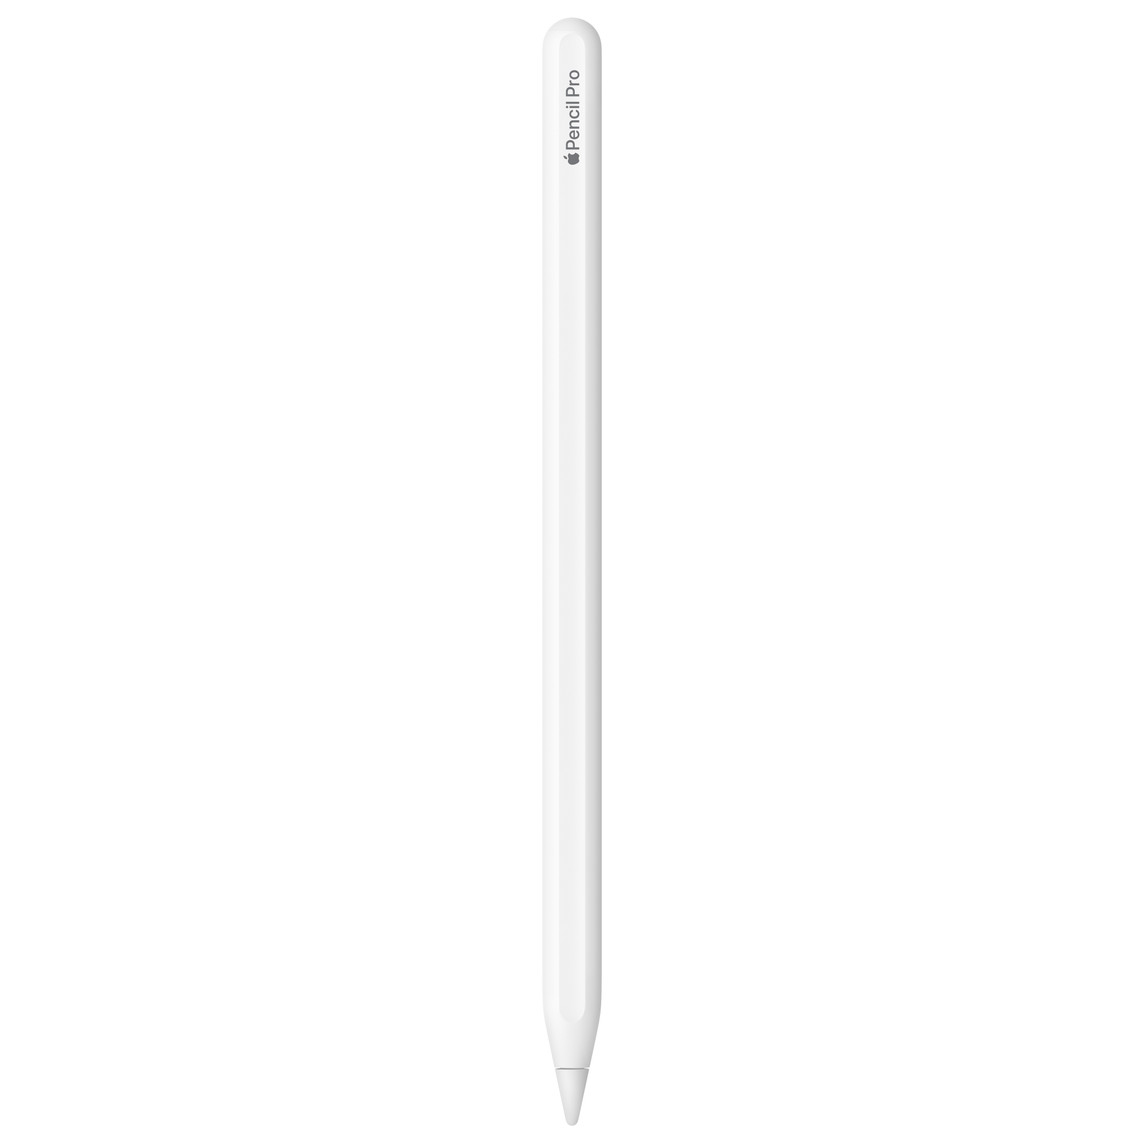 Apple Pencil Pro, valkoinen, kaiverruksessa lukee Apple Pencil Pro, Apple-sanan tilalla on Apple-logo